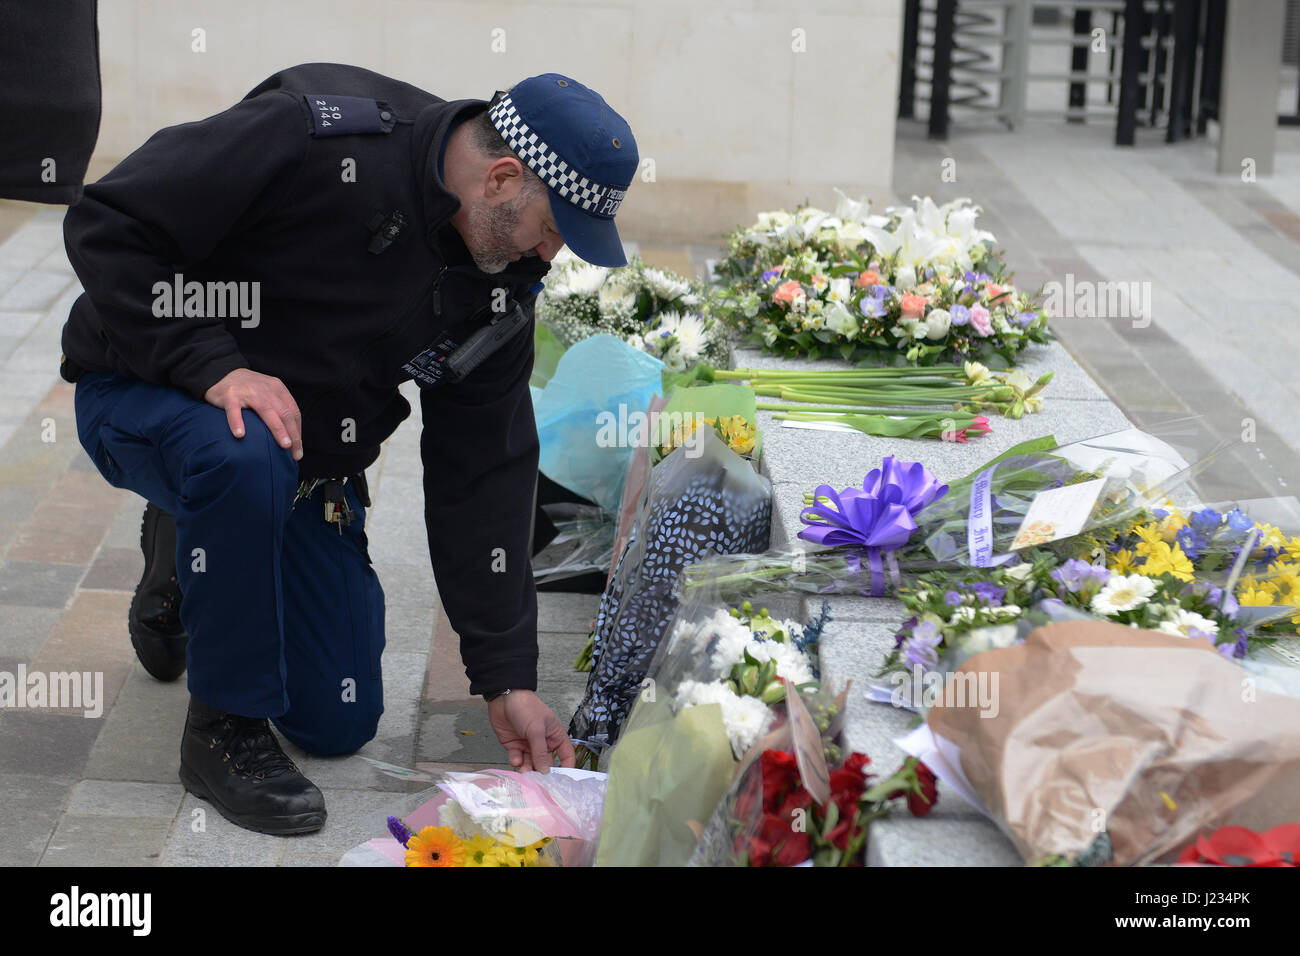 Tributs floraux pour PC Keith Palmer qui a été tué le 21 mars lors d'une attaque terroriste, sont placés à l'extérieur de New Scotland Yard, London comprend : tributs floraux Où : London, Royaume-Uni Quand : 24 Mars 2017 Banque D'Images